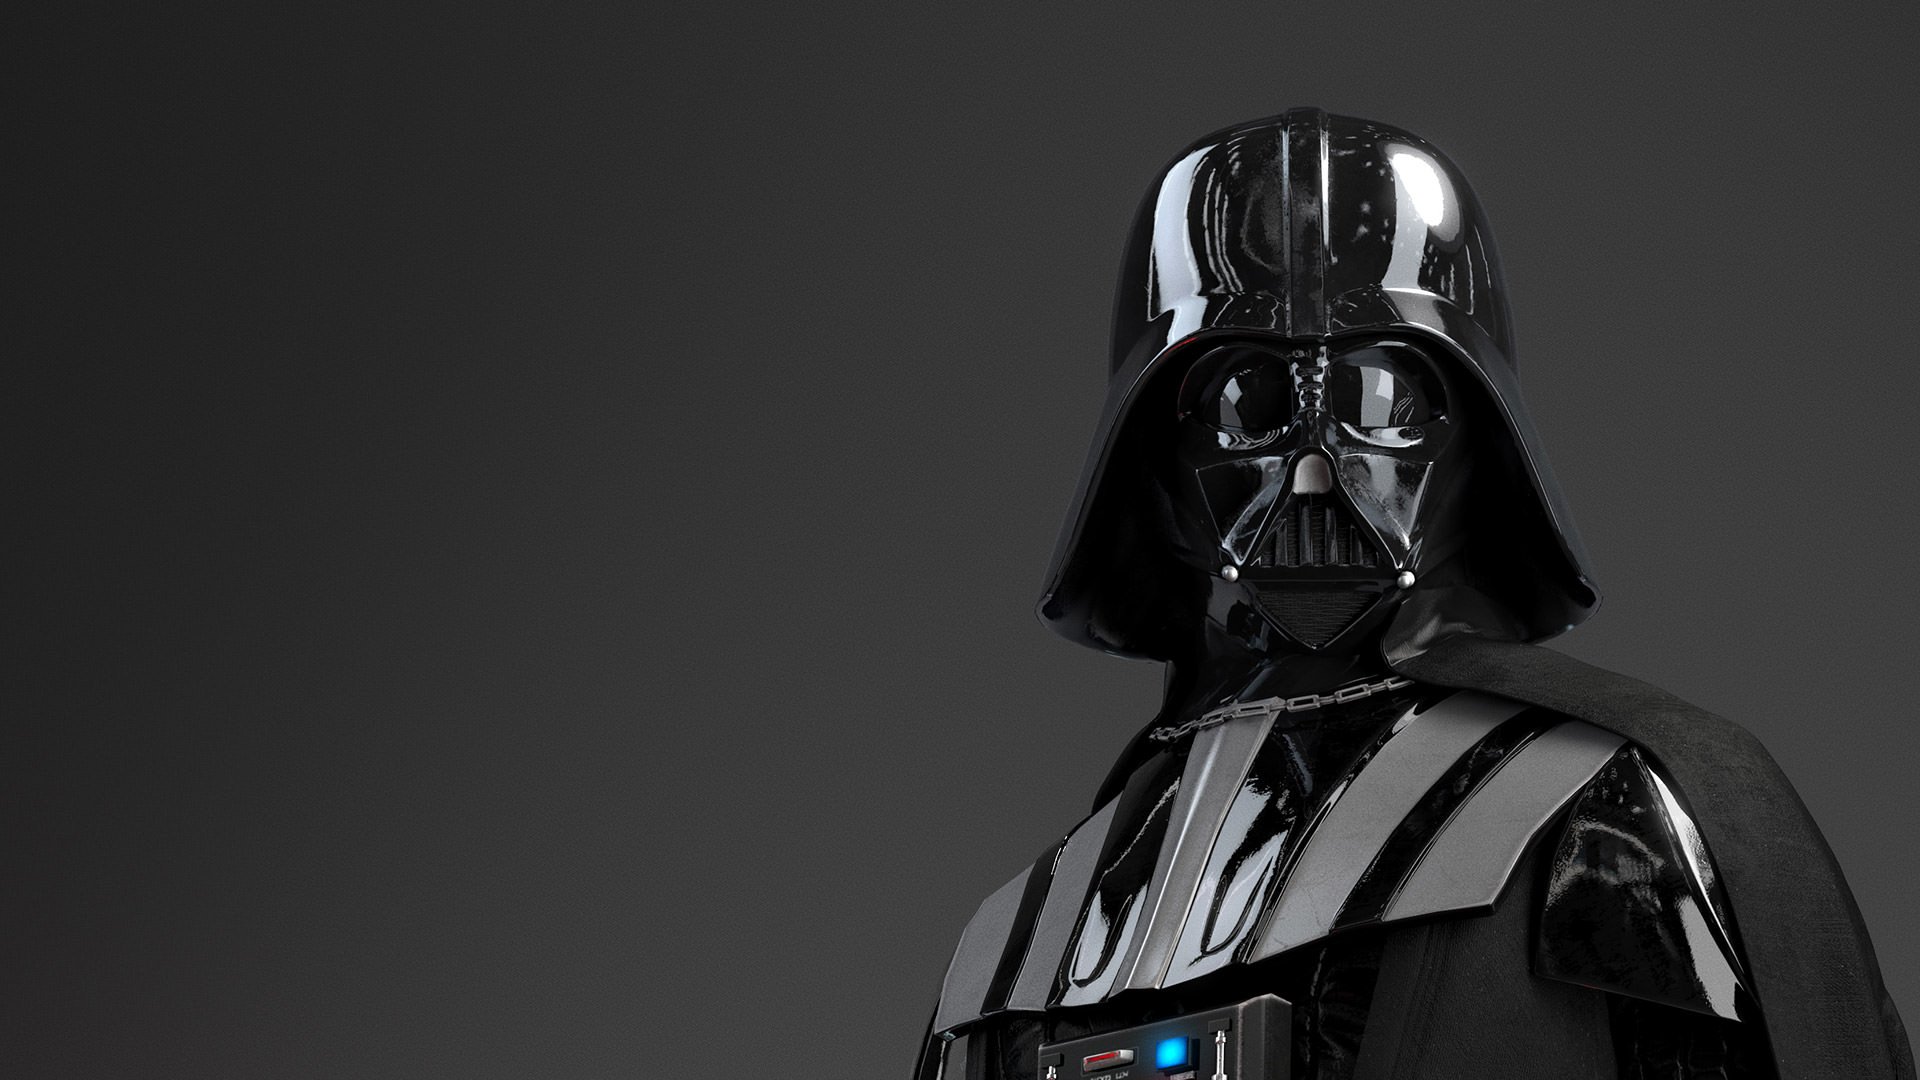 Movie Wallpaper: Star Wars Darth Vader Desktop Wallpaper For HD ...